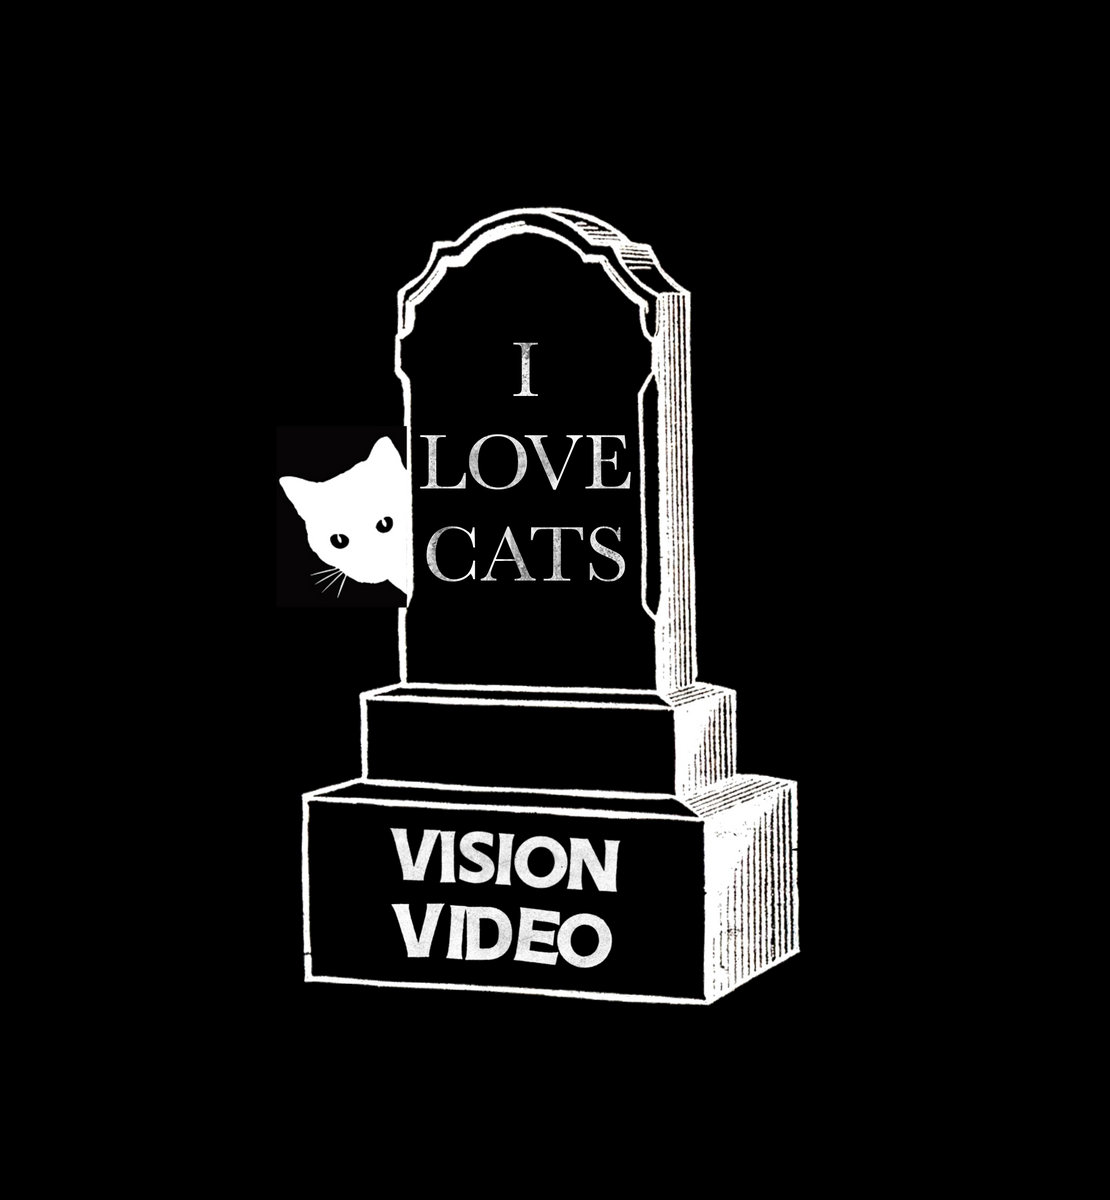 Activités très souterraines – Vision Video – I Love Cats